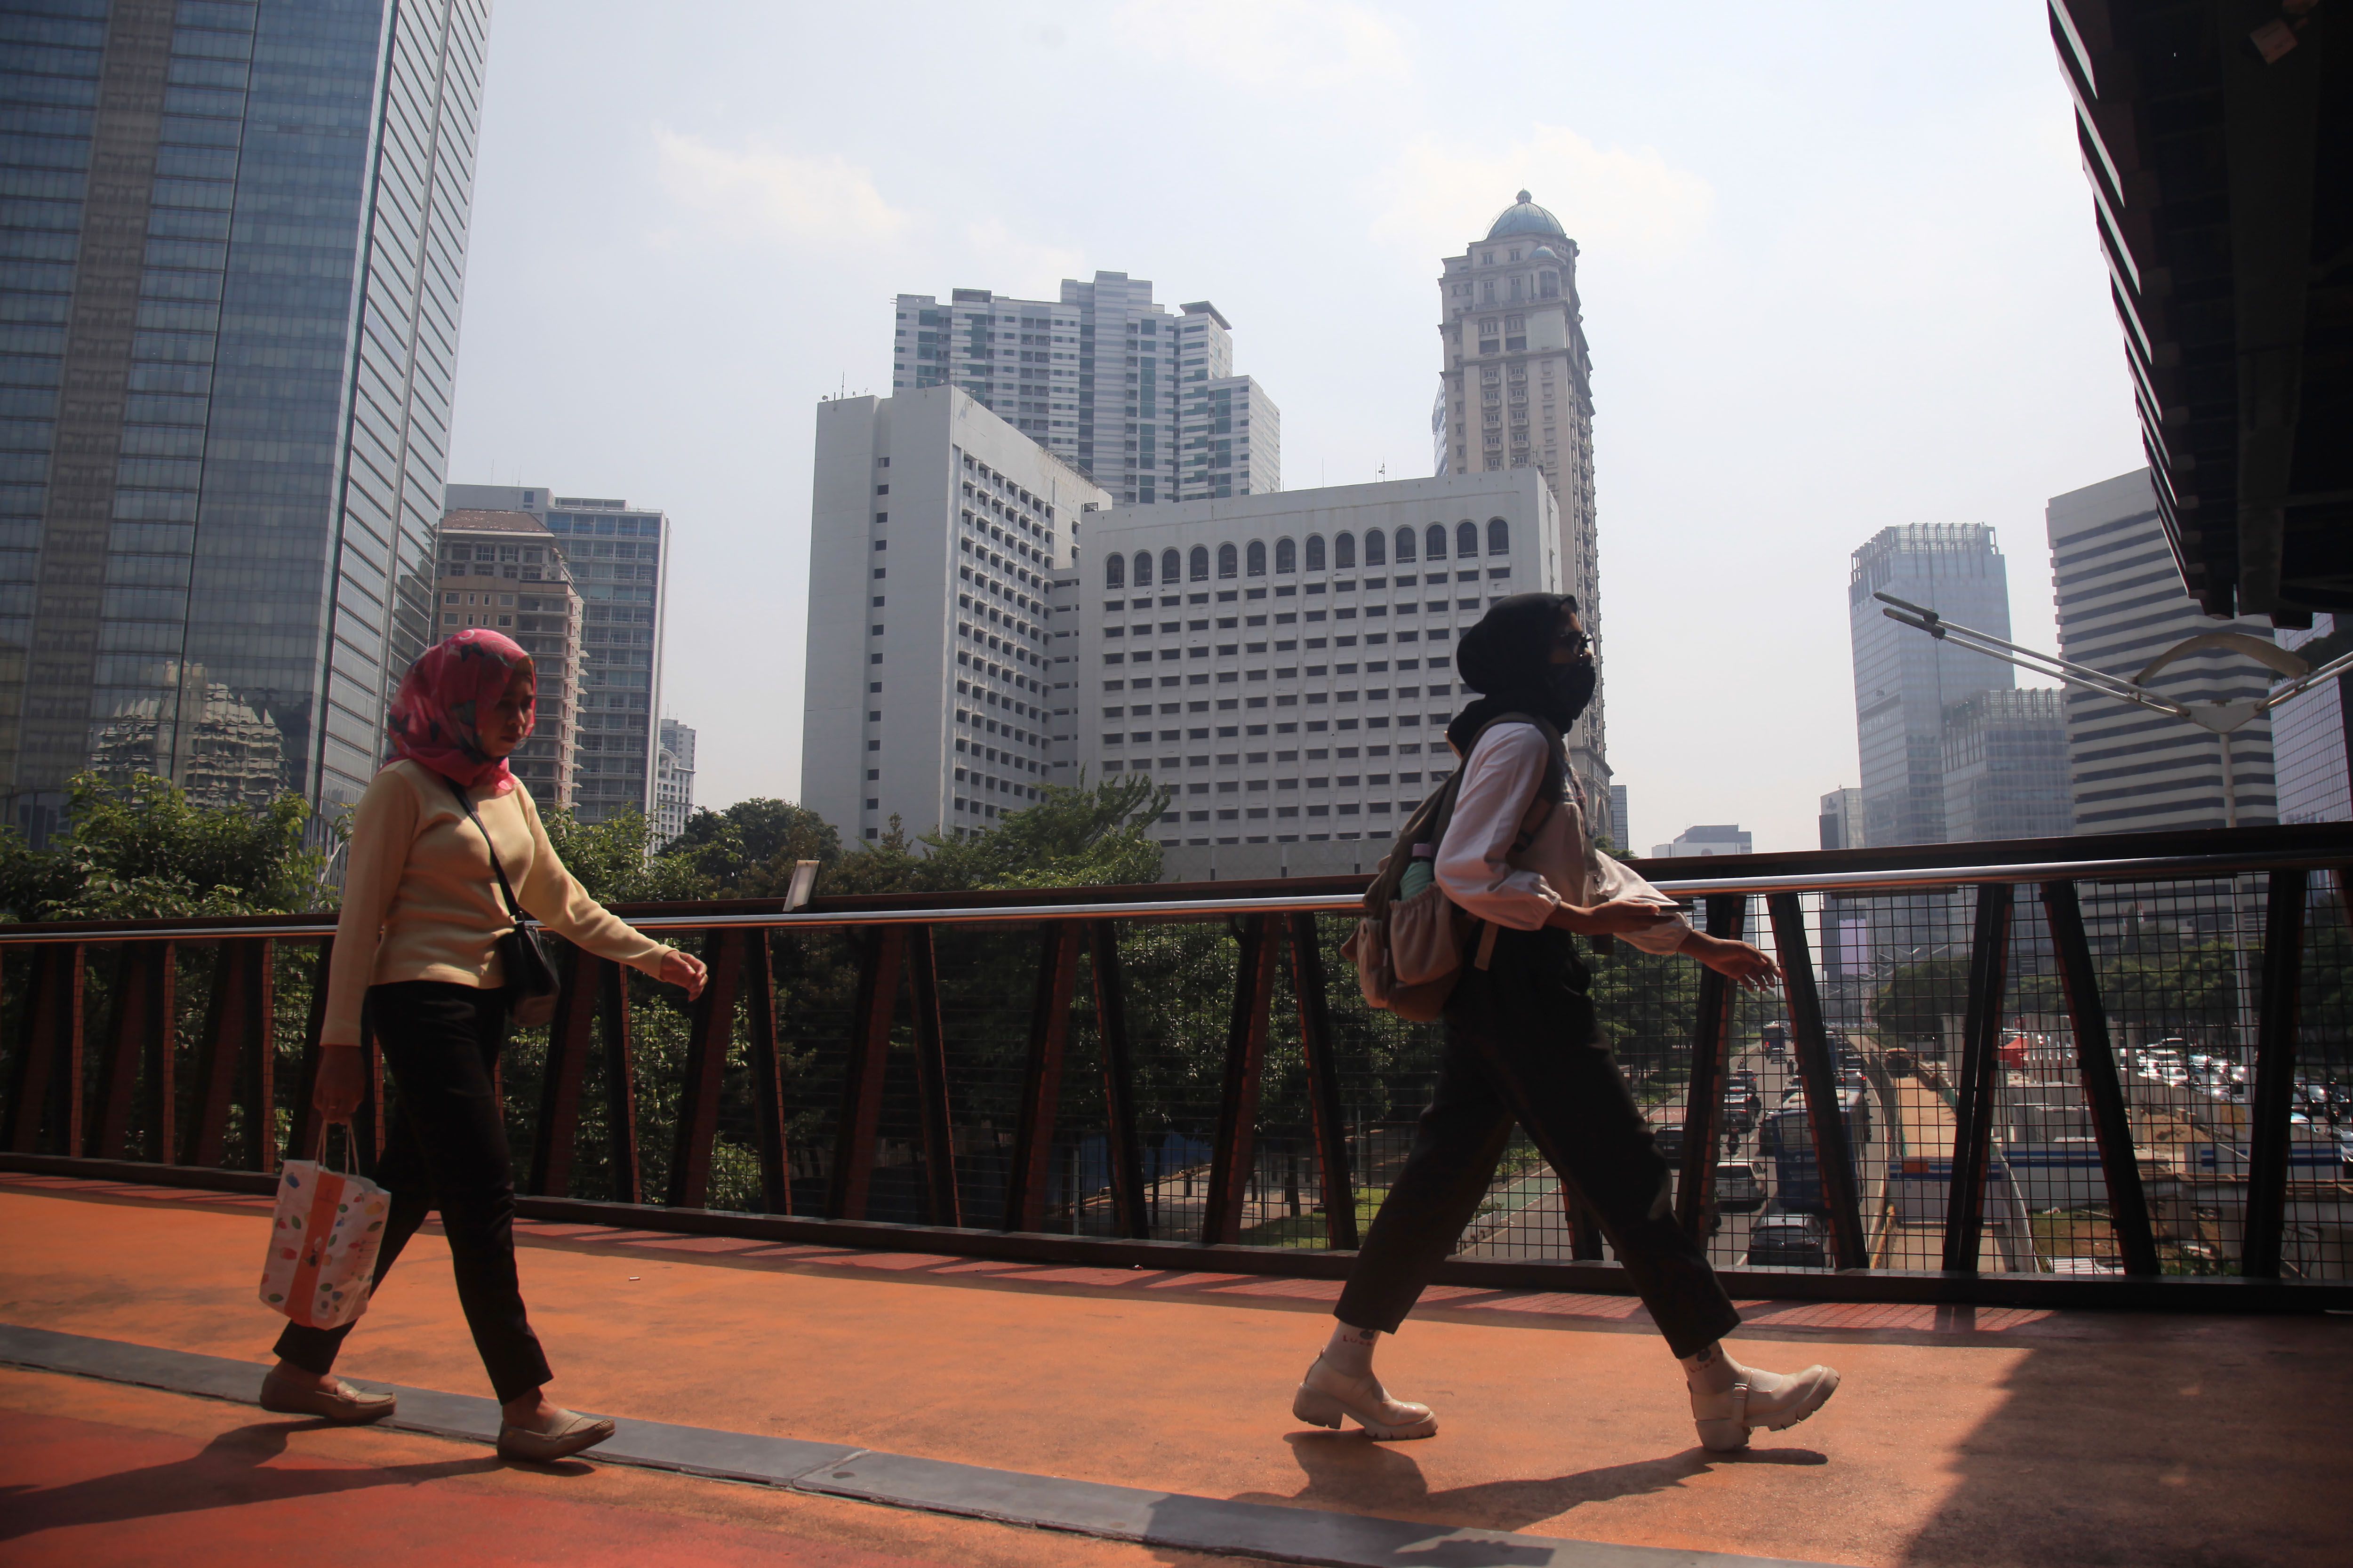 Pemprov DKI Jakarta mengimbau warga menggunakan masker untuk mengantisipasi polusi udara di Ibu Kota akibat polusi udara Jakarta dinilai sangat buruk.